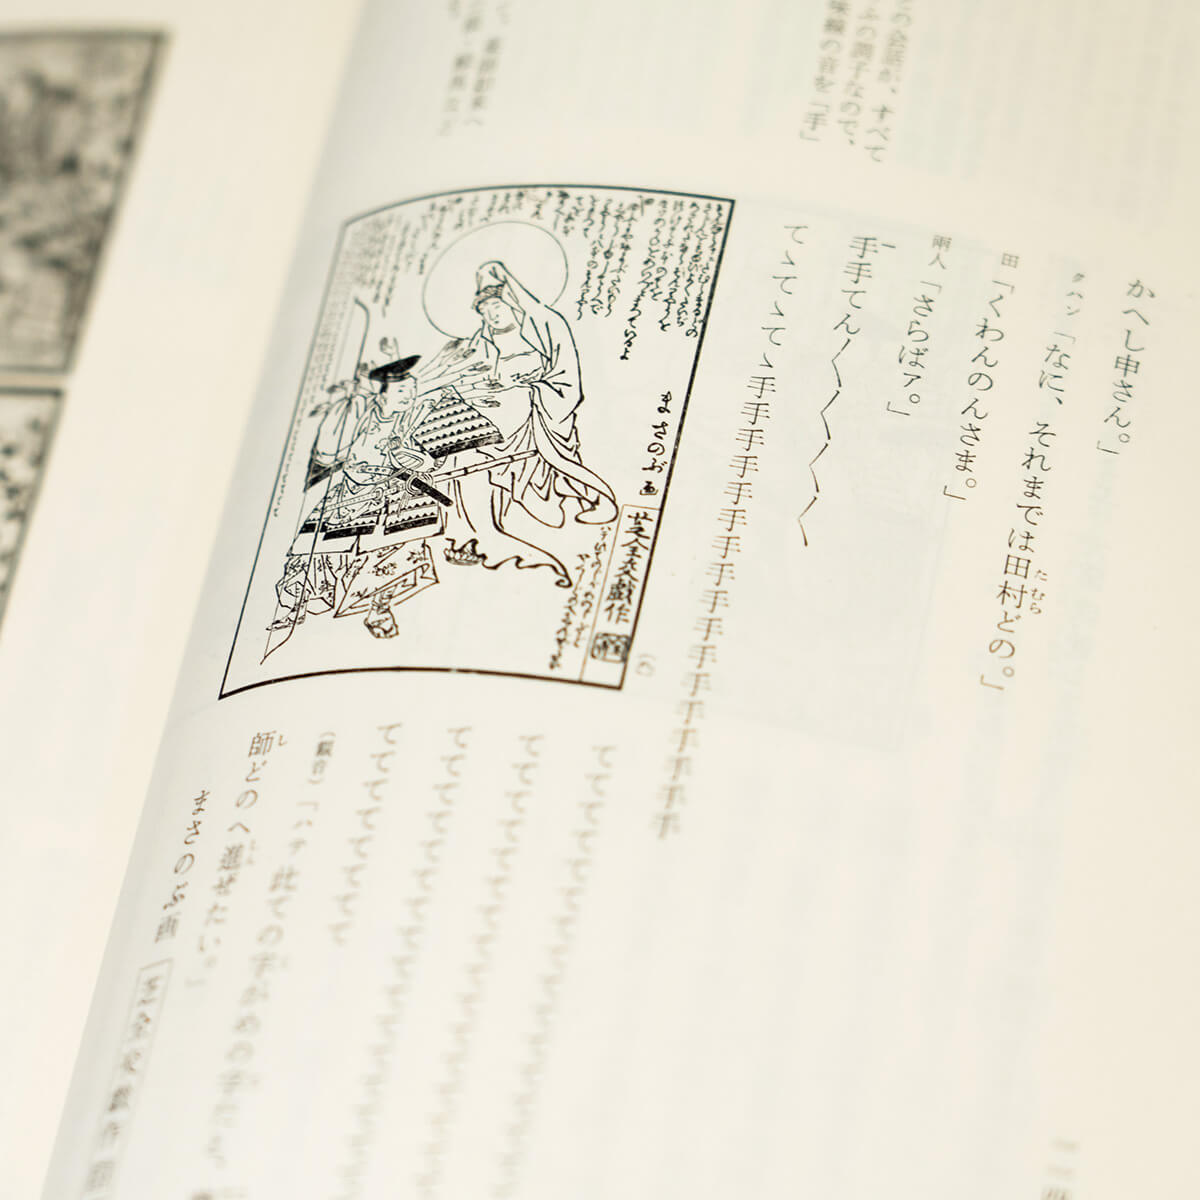 浮世絵師・北尾政演が描いた江戸時代の漫画